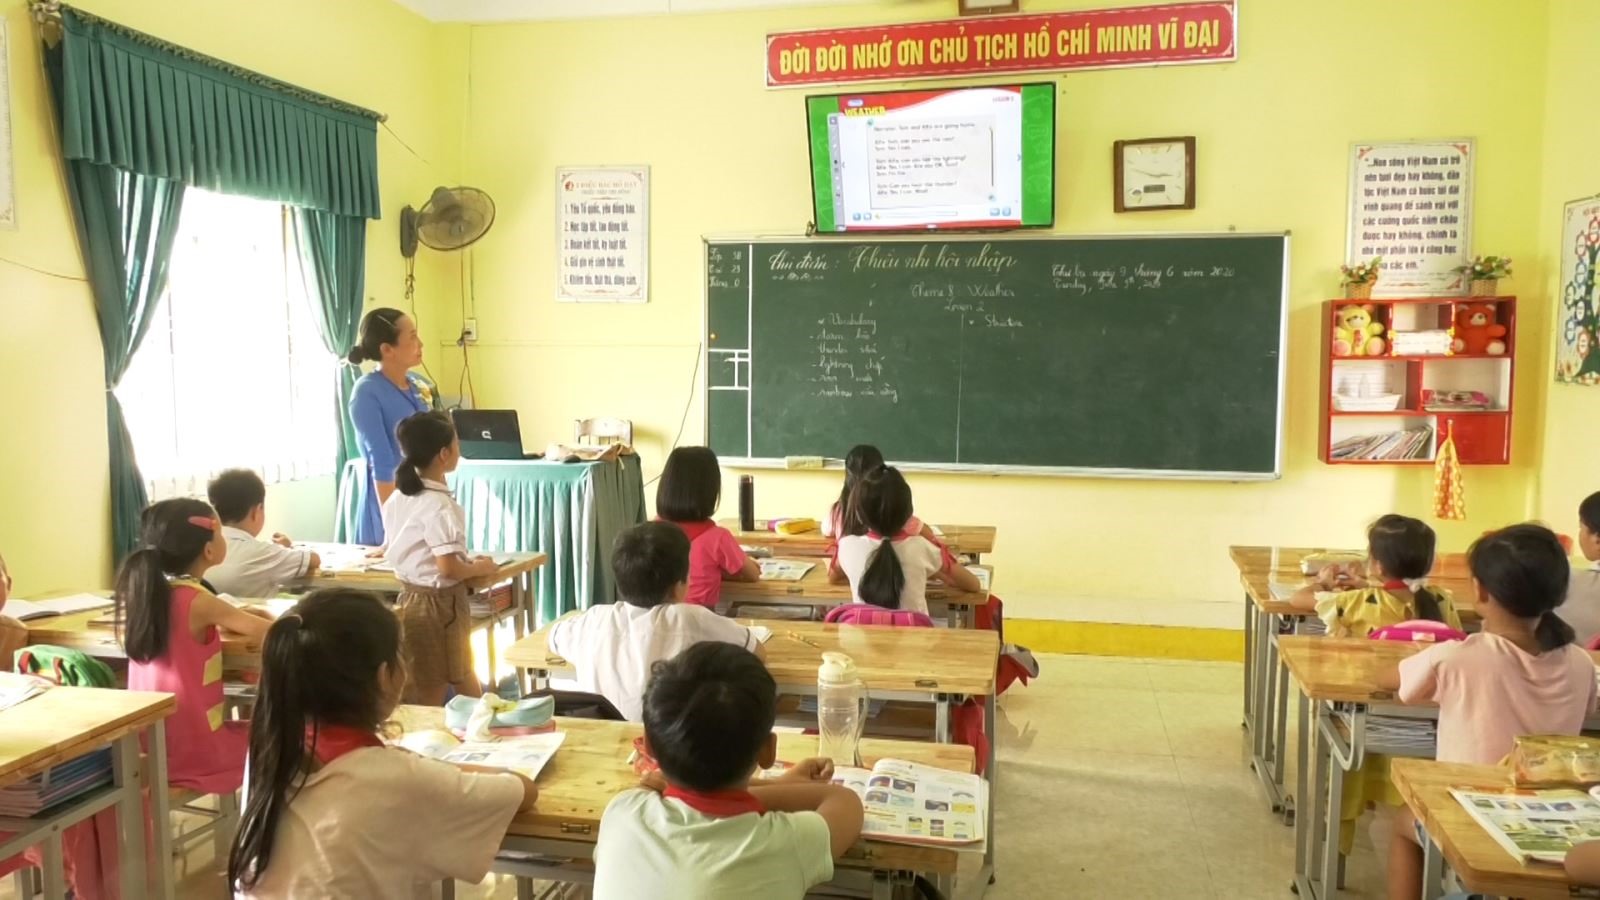 Lớp học được trang bị máy tính và các thiết bị đáp ứng yêu cầu của chương trình giáo dục phổ thông mới tại Trường Tiểu học Đông Giang.